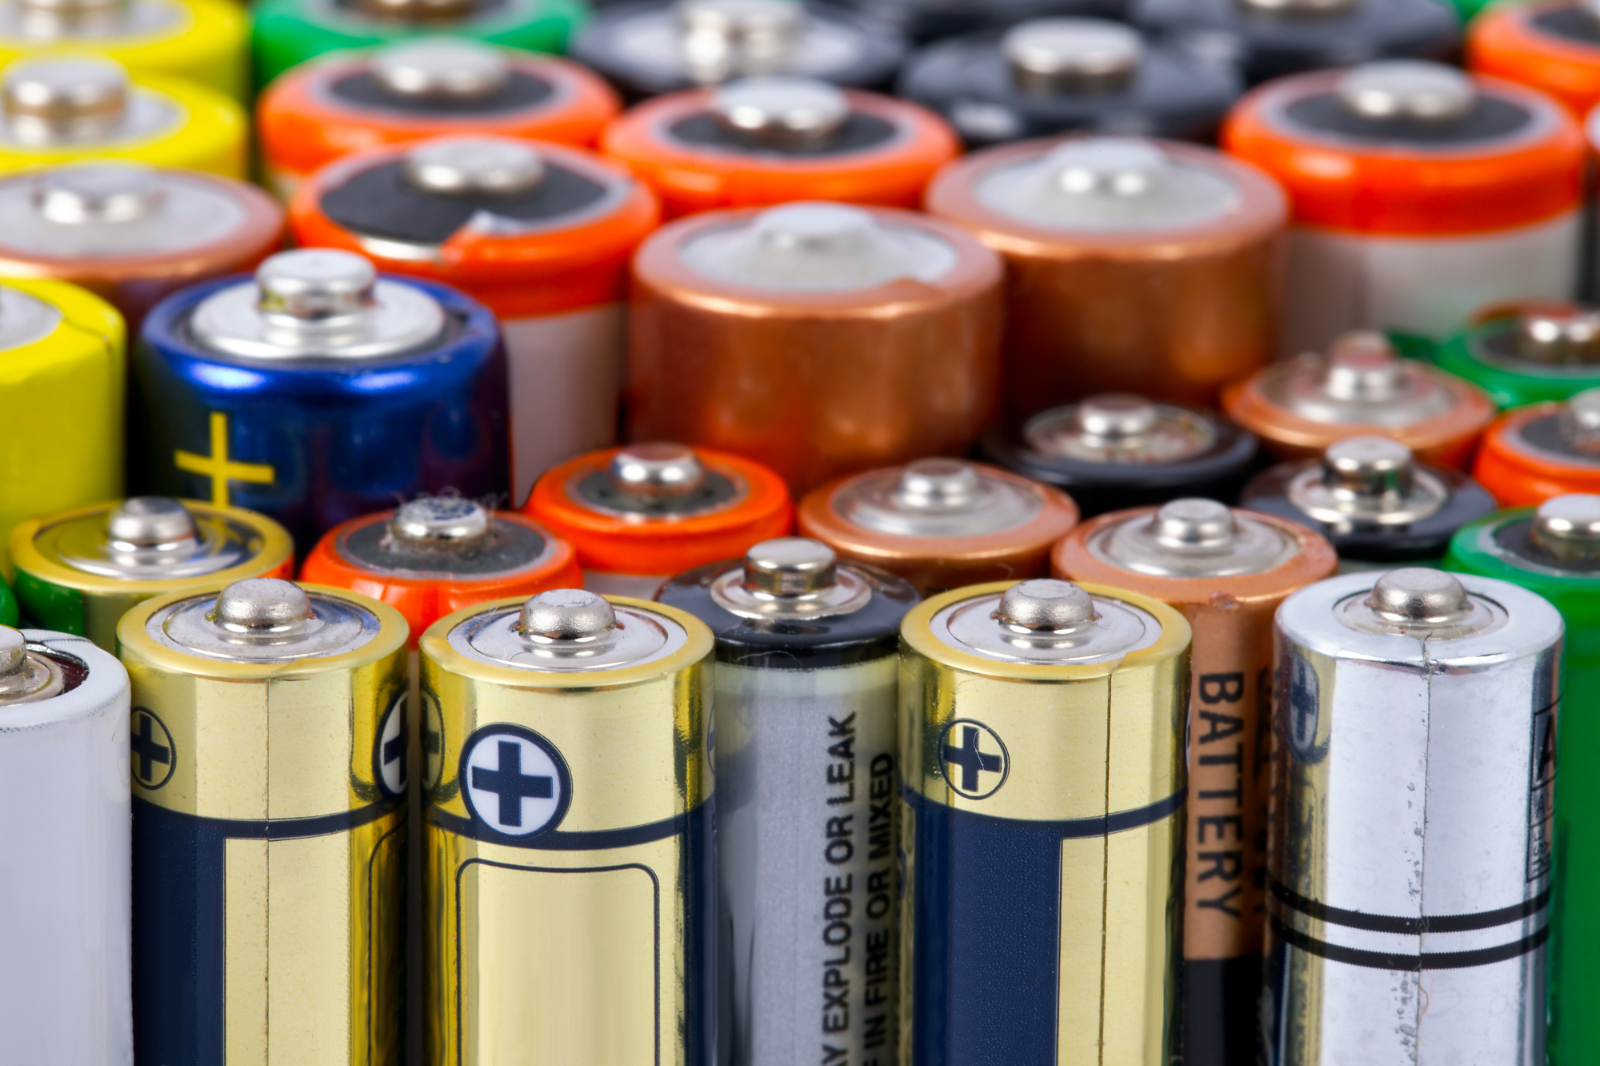 Comment gérer le recyclage des piles et batteries, objets incontournables de notre quotidien ? © Gudellaphoto, Adobe Stock